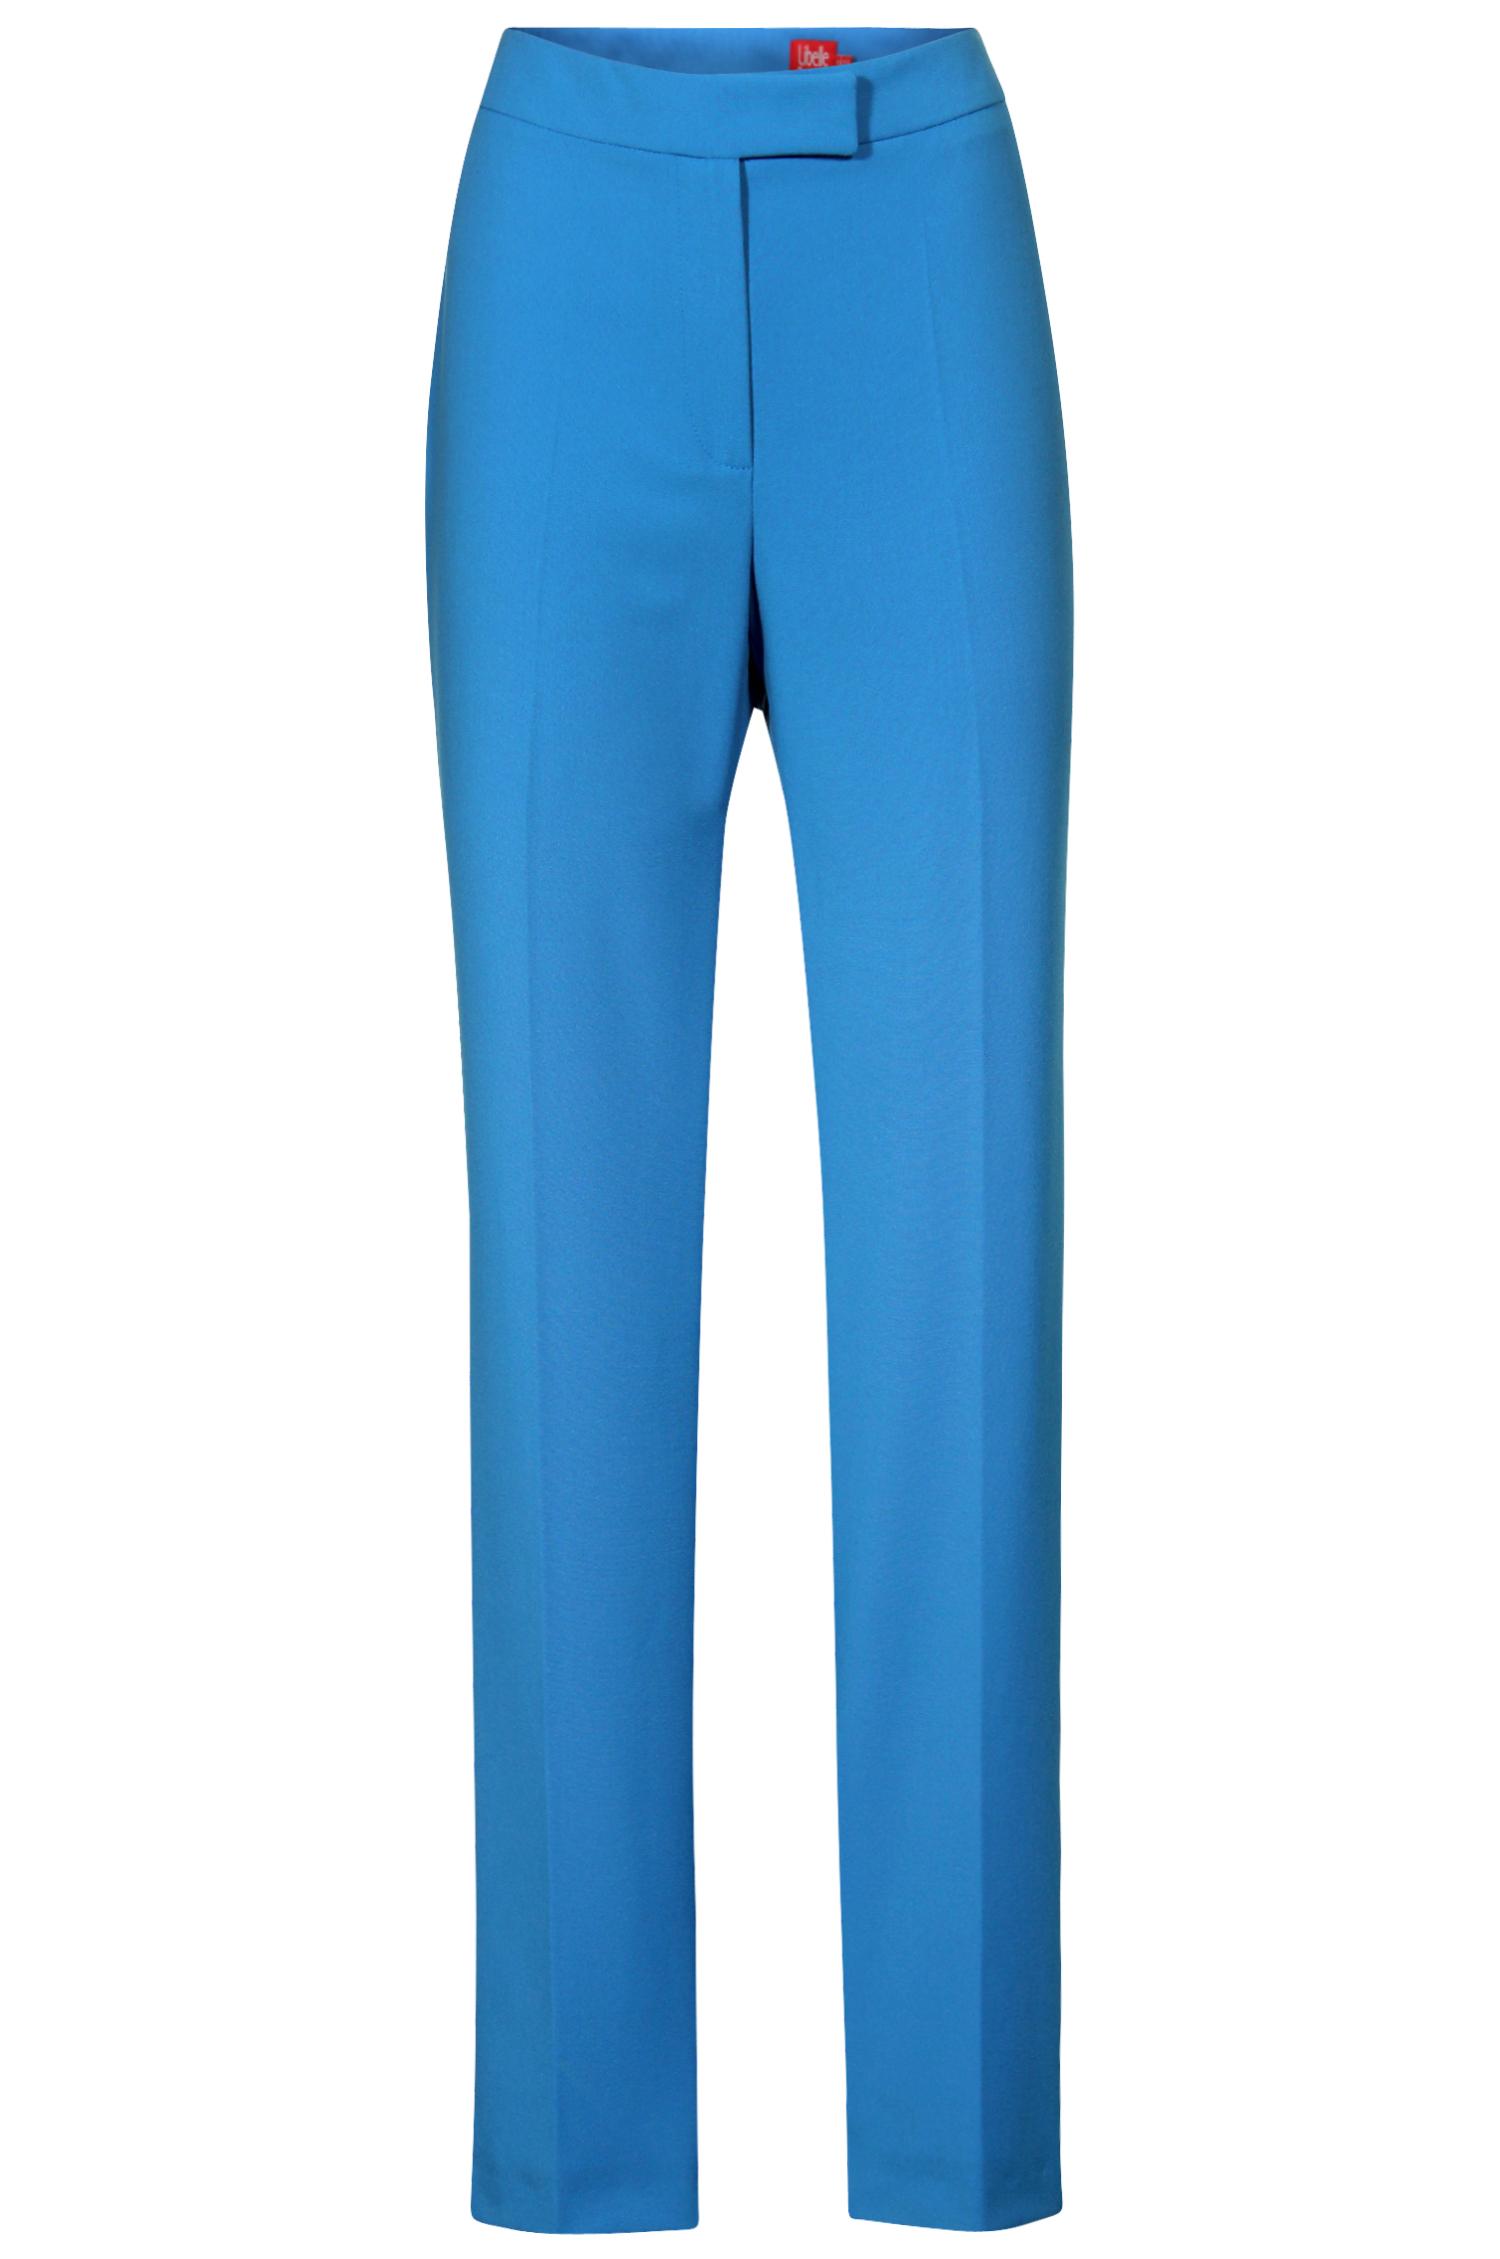 Pantalon bleu - 44,95€